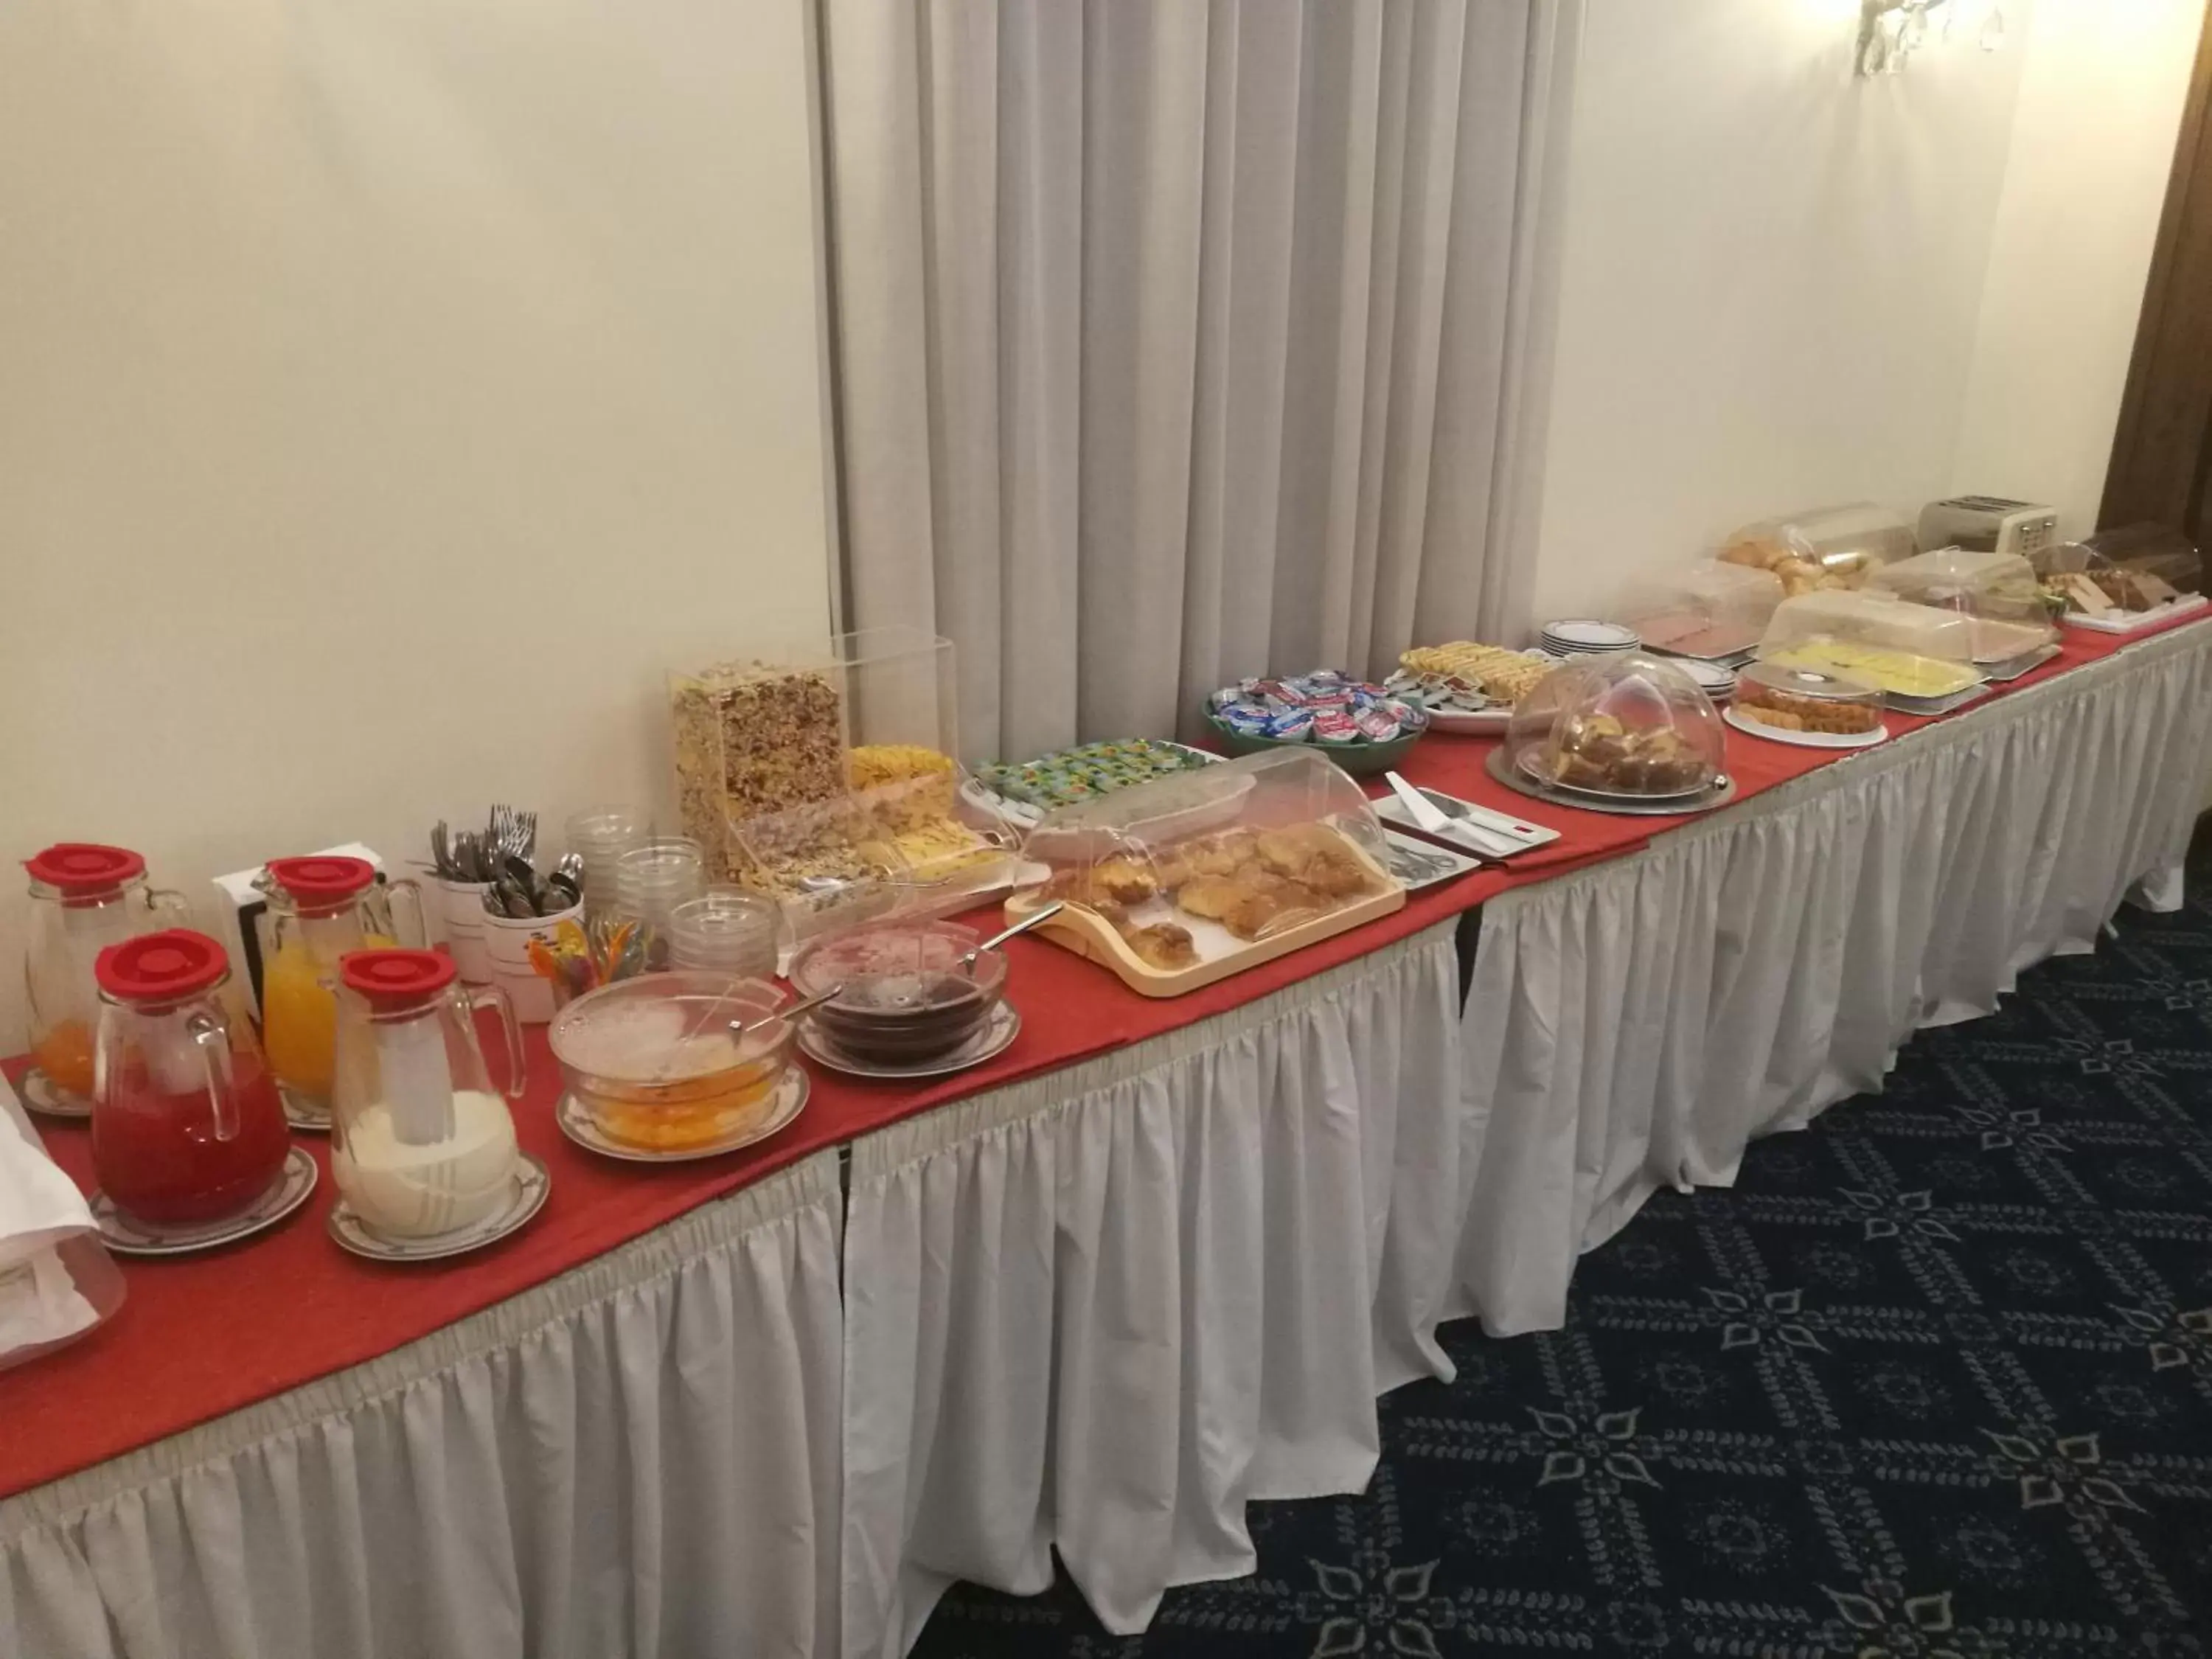 Buffet breakfast, Breakfast in Hotel Villa Delle Rose